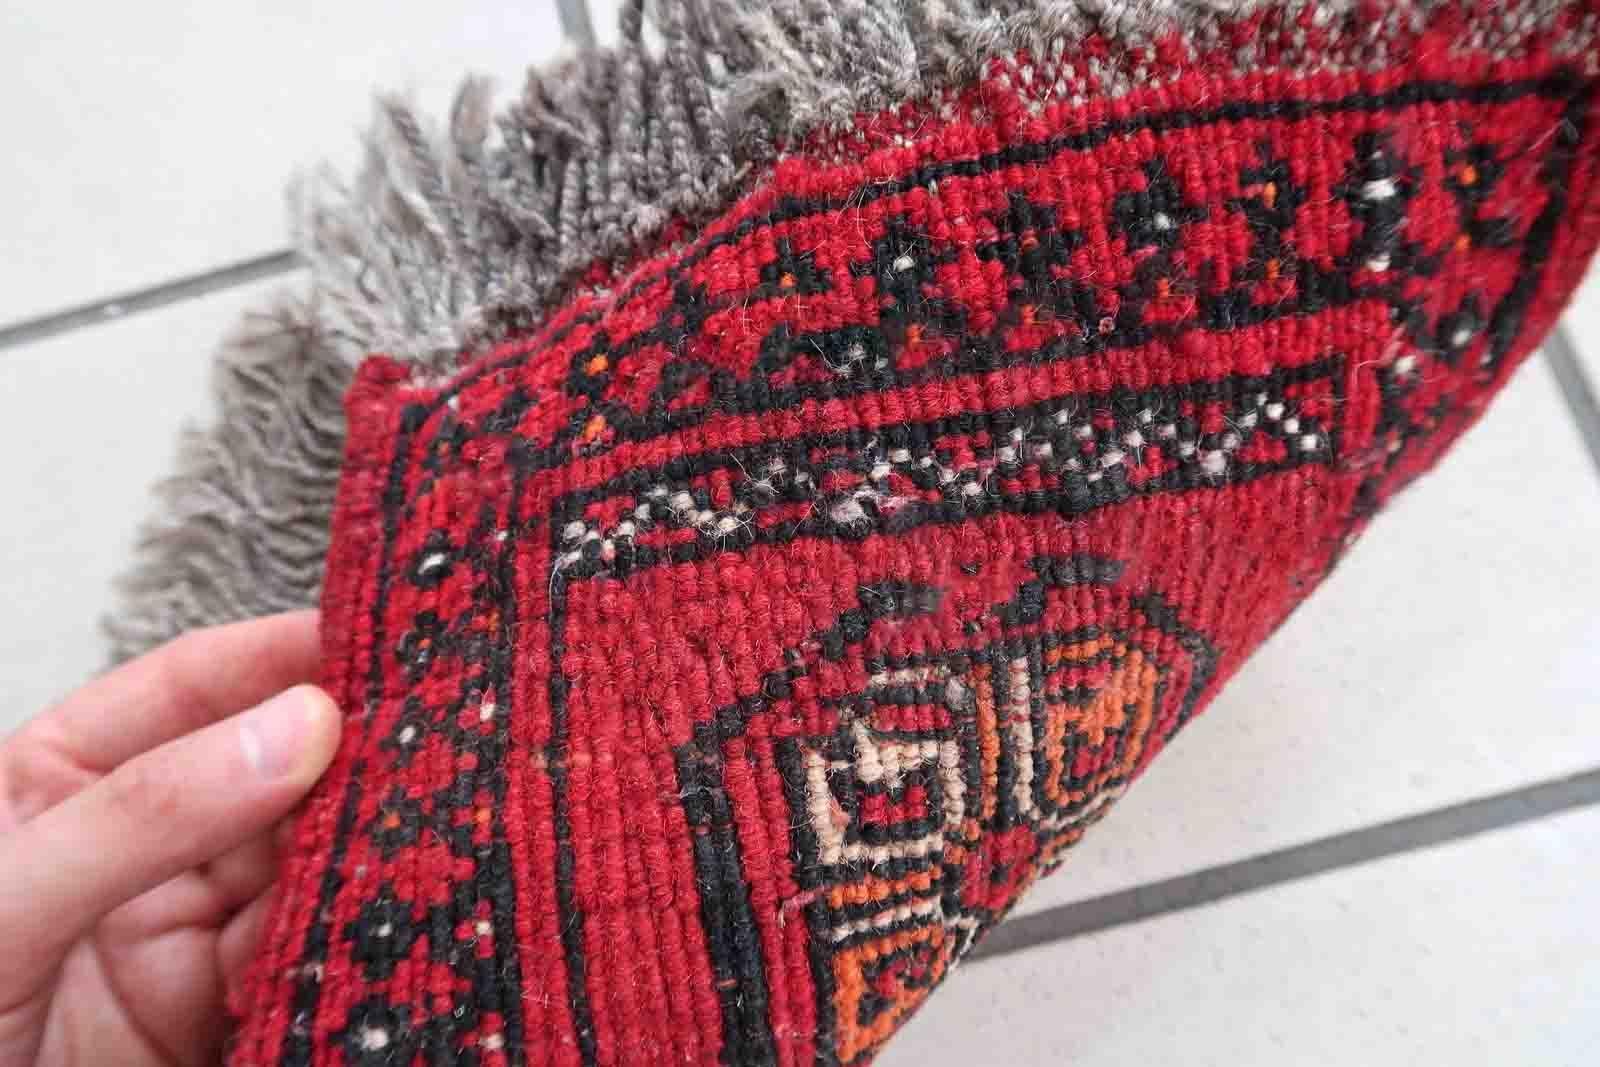 Handgefertigte afghanische Ersari-Matte in leuchtend rotem Farbton. Der Teppich stammt aus dem Ende des 20. Jahrhunderts und ist in gutem Originalzustand. Er kann als Puppenhausteppich verwendet werden.

-Zustand: original gut,

-Umgebung: